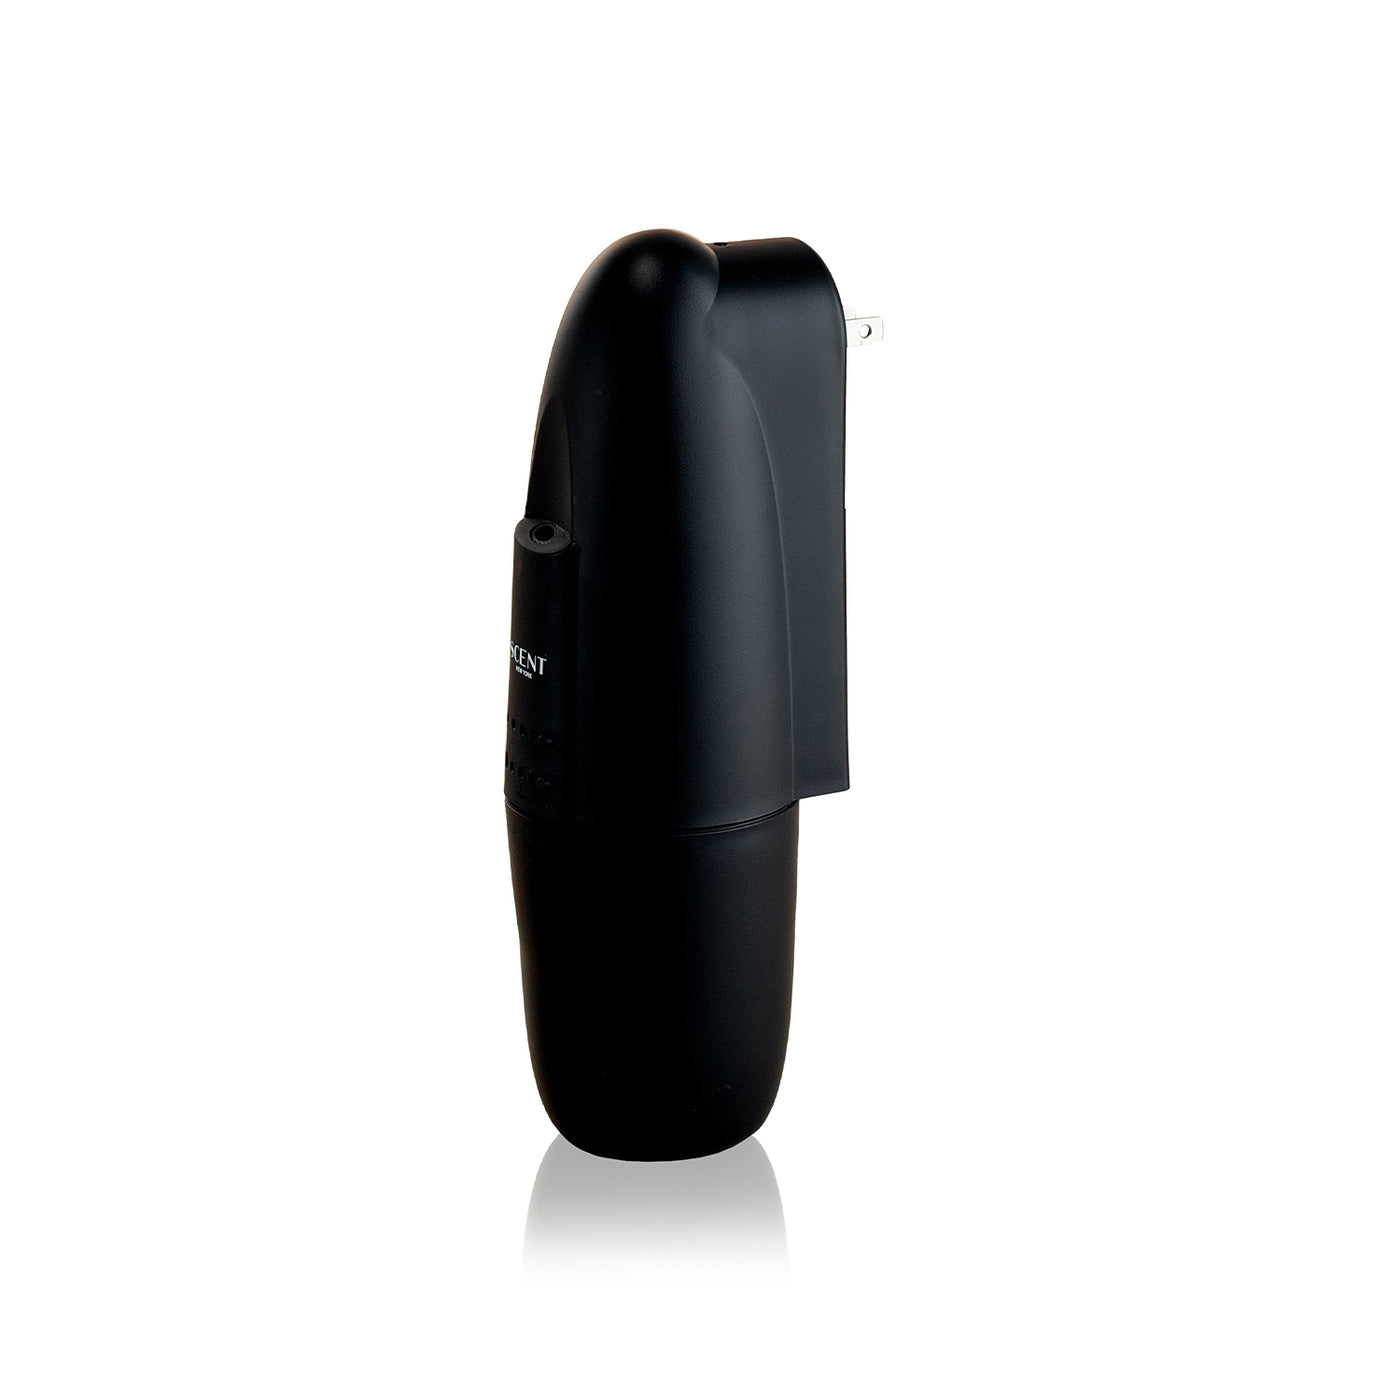 Home Diffuser - Scent Plug-in Diffuser - Black